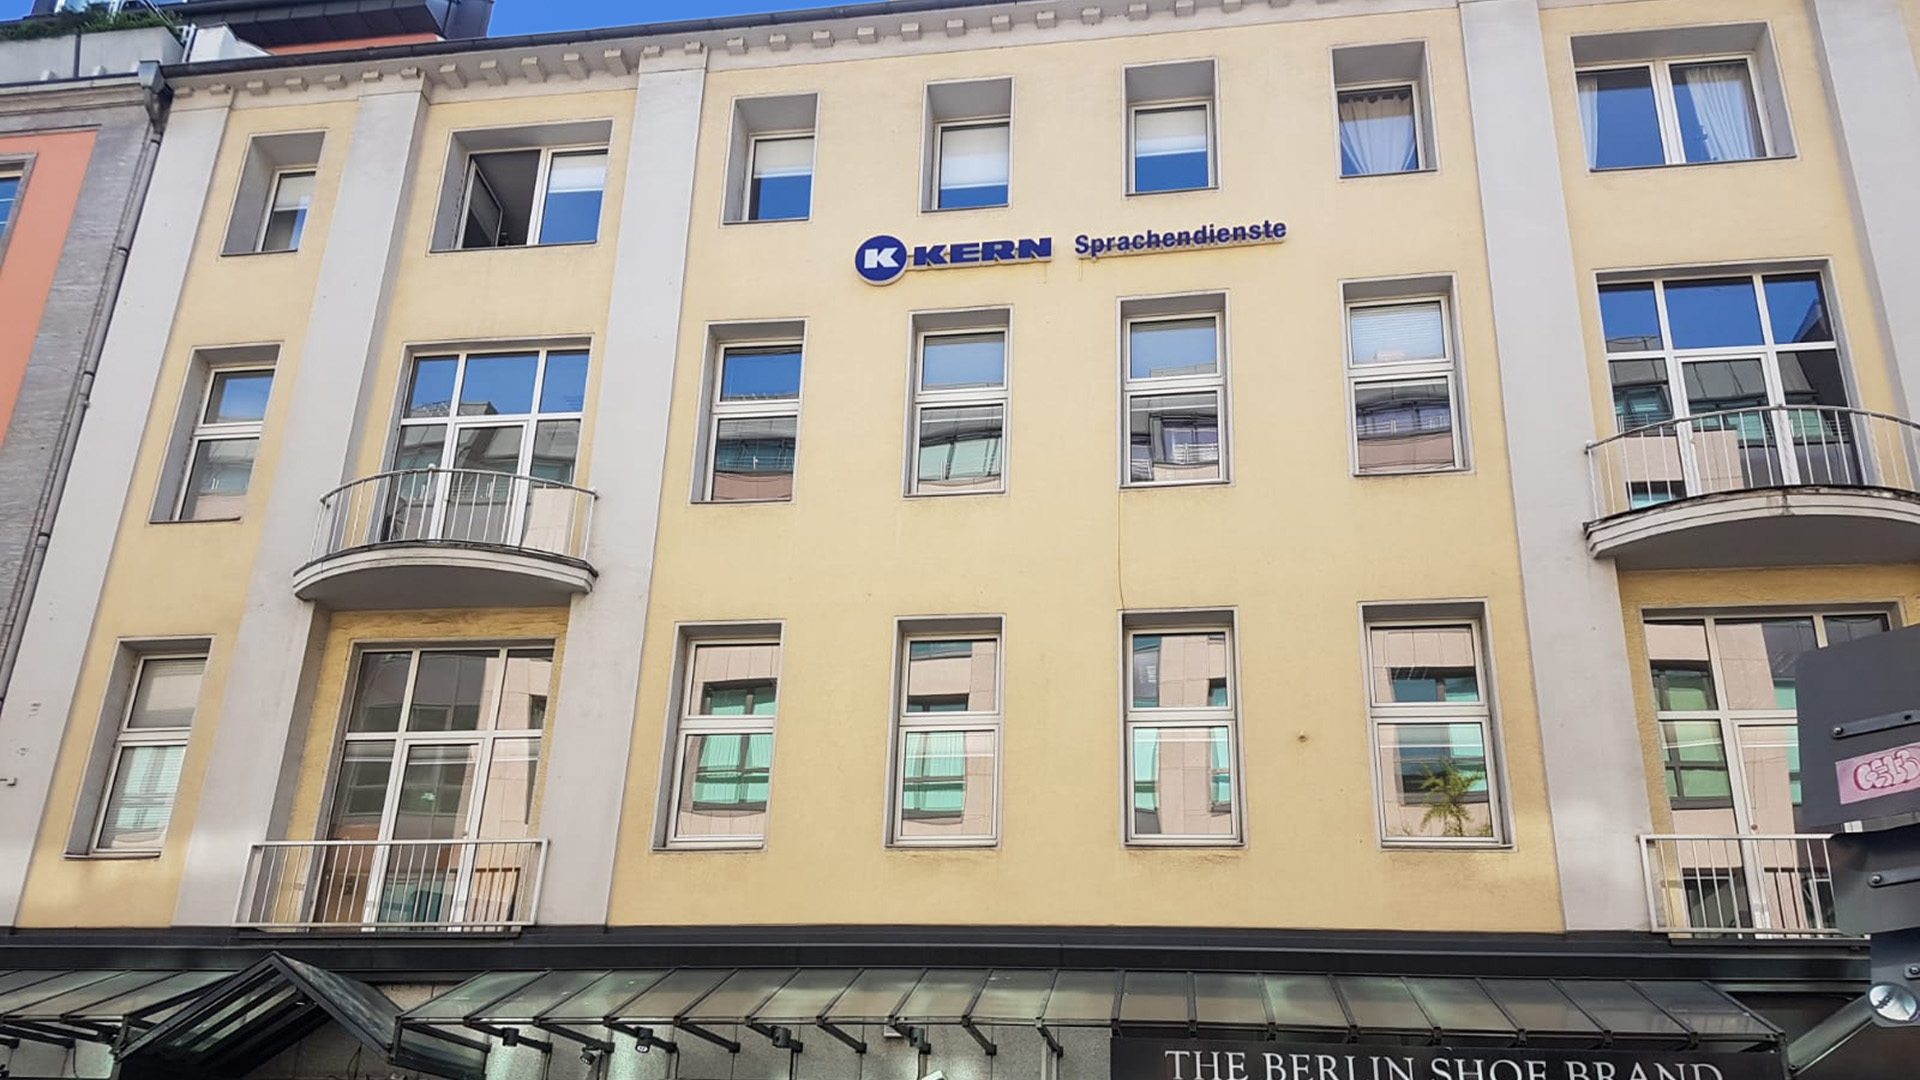 Biuro tłumaczeń w Düsseldorfie